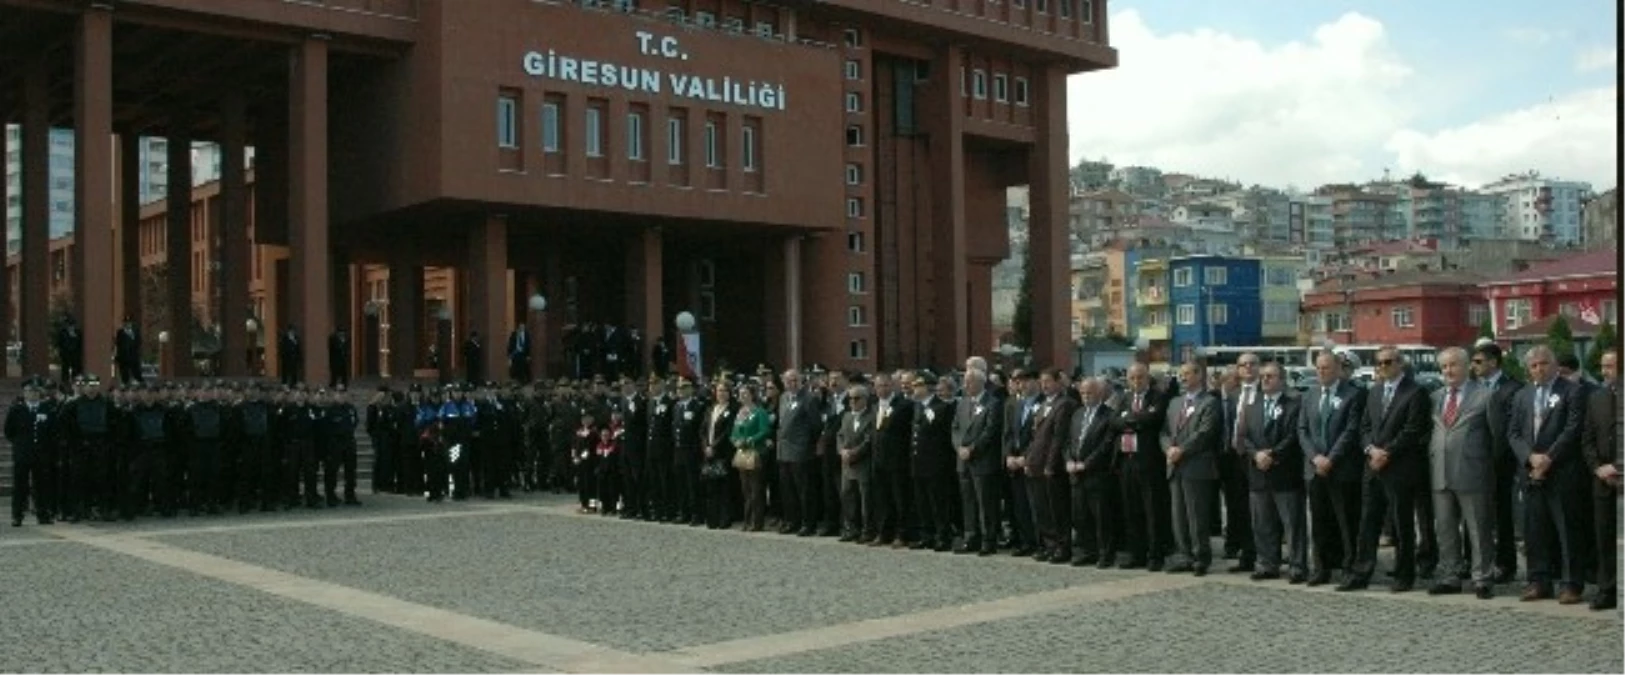 Giresun\'da Türk Polis Teşkilatının 169. Kuruluş Yıl Dönümü Törenle Kutlandı